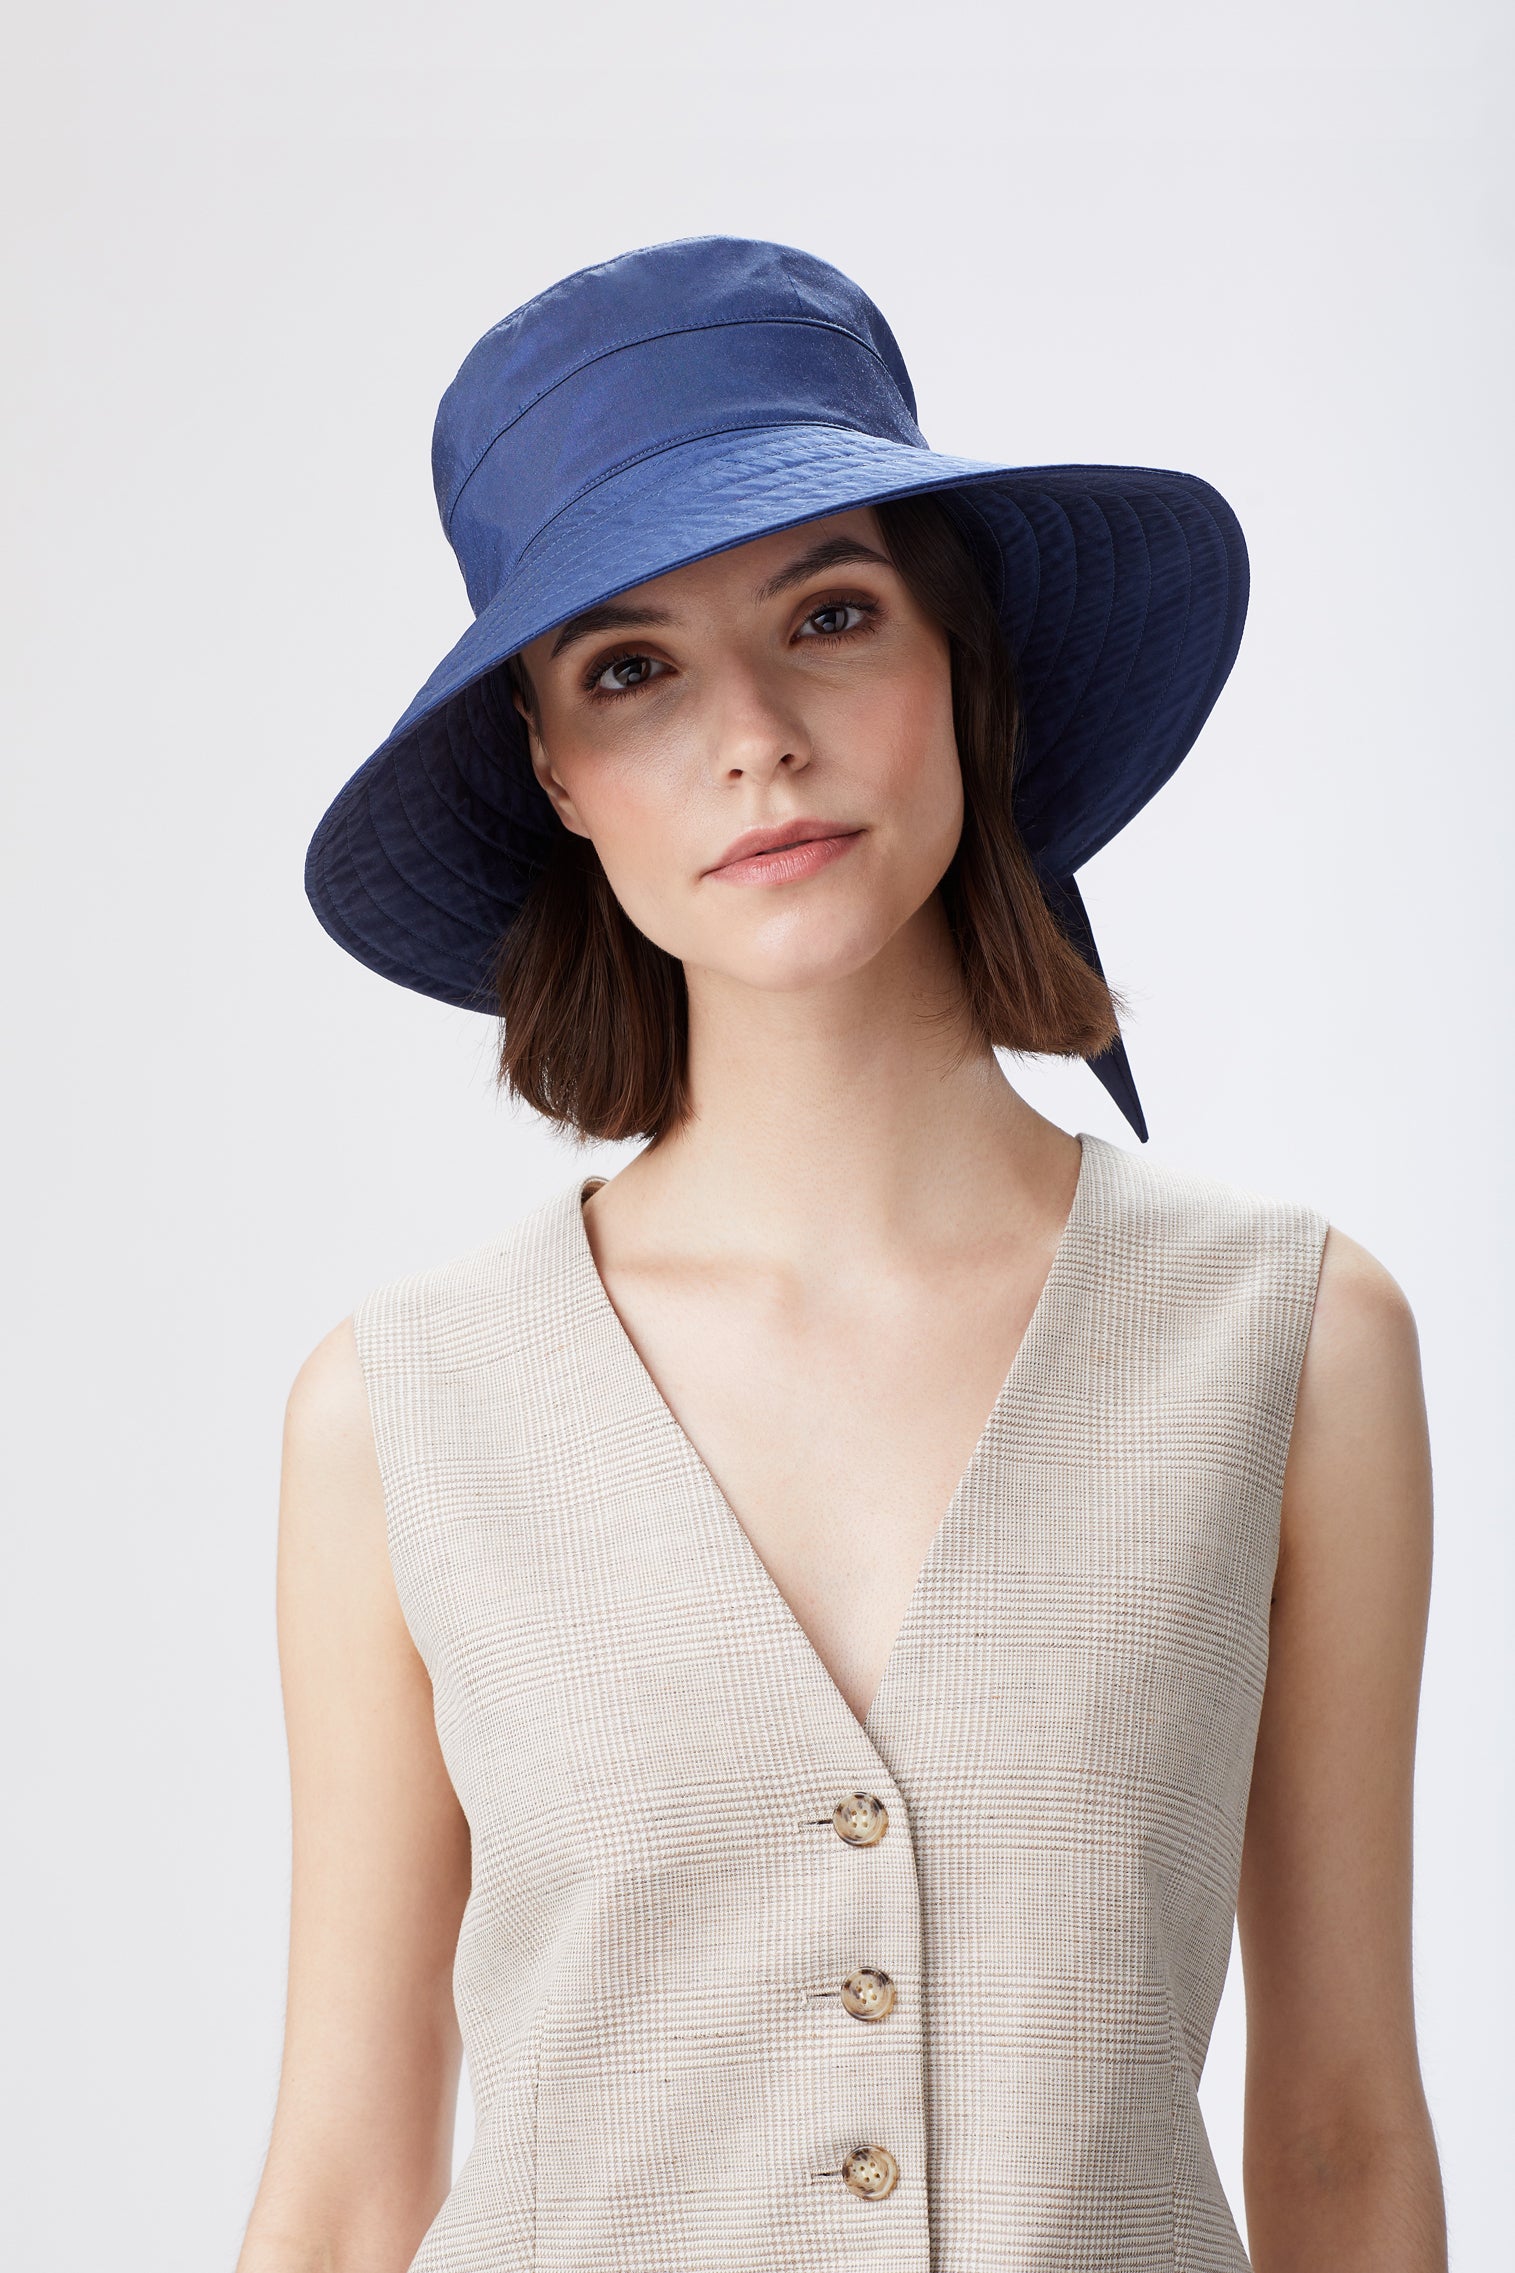 Brigitte Silk Sun Hat - Panamas, Straw and Sun Hats for Women - Lock & Co. Hatters London UK